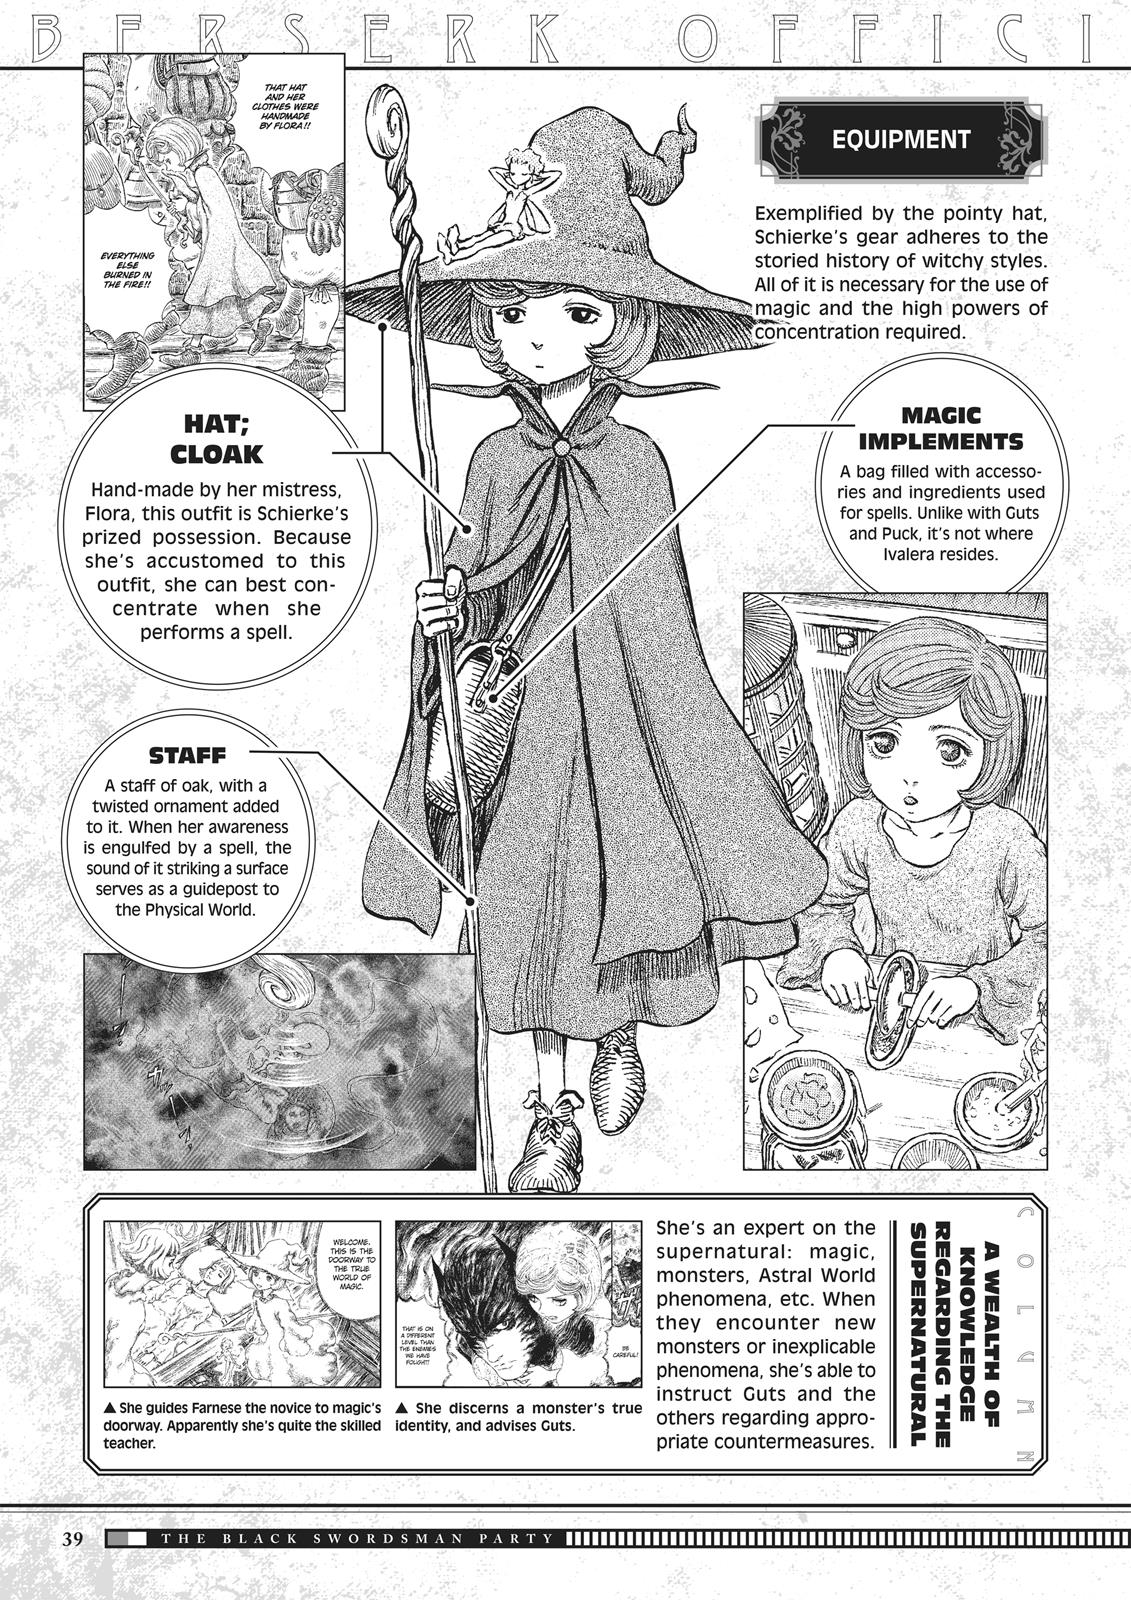 Berserk Manga Chapter 350.5 image 039